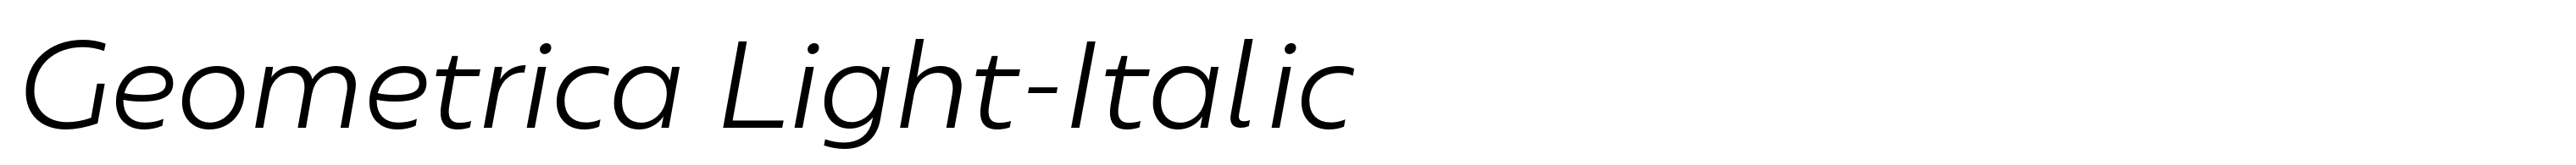 Geometrica Light-Italic